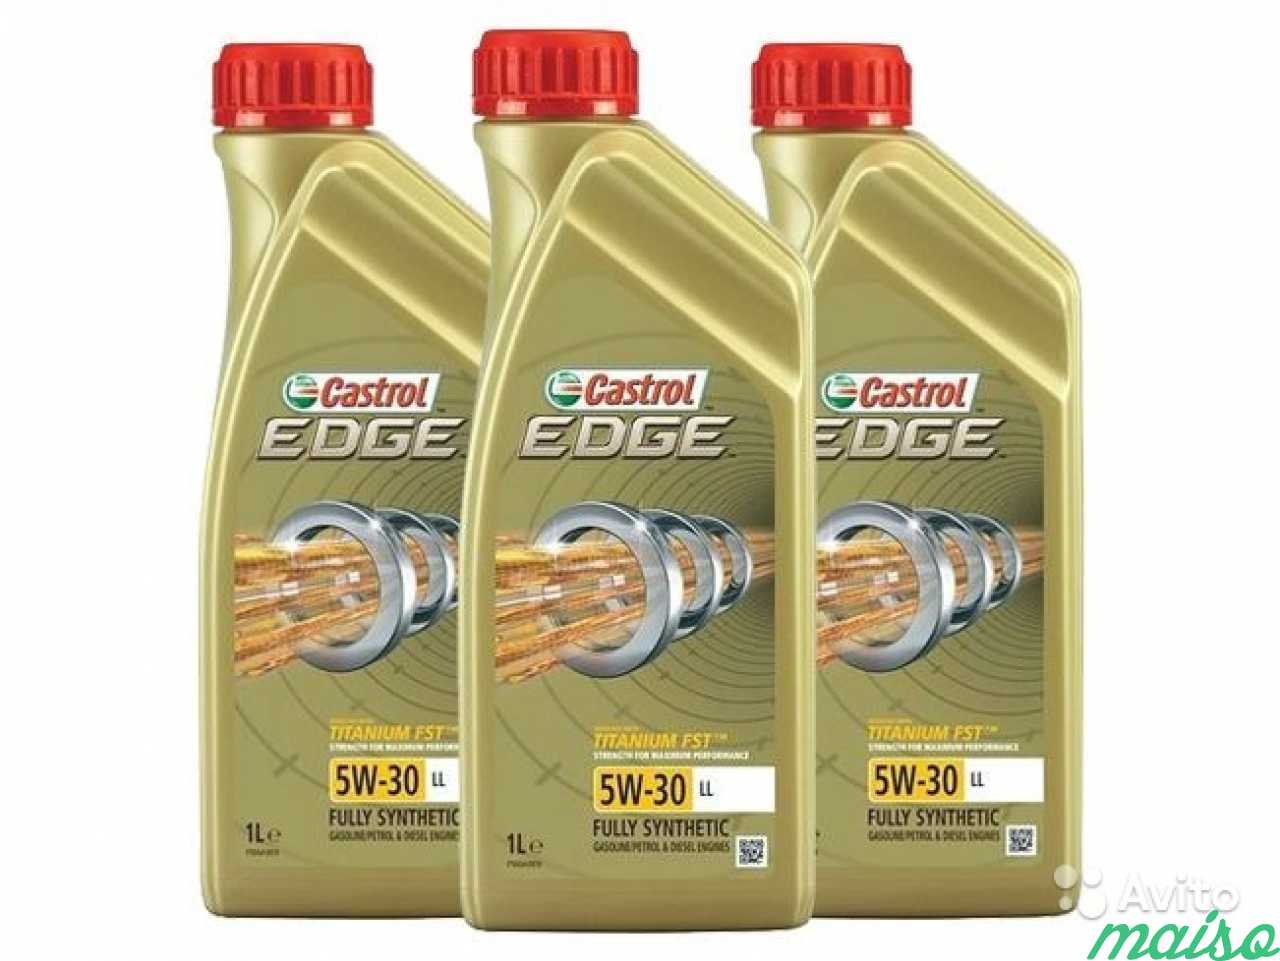 Edge 5w30 купить. Castrol Edge 5w-30 ll. Castrol Edge 5w30 ll 1л 15667c. Castrol Edge Titanium FST 5w-30 ll 1л. Castrol Edge 5w30 4л +1л.